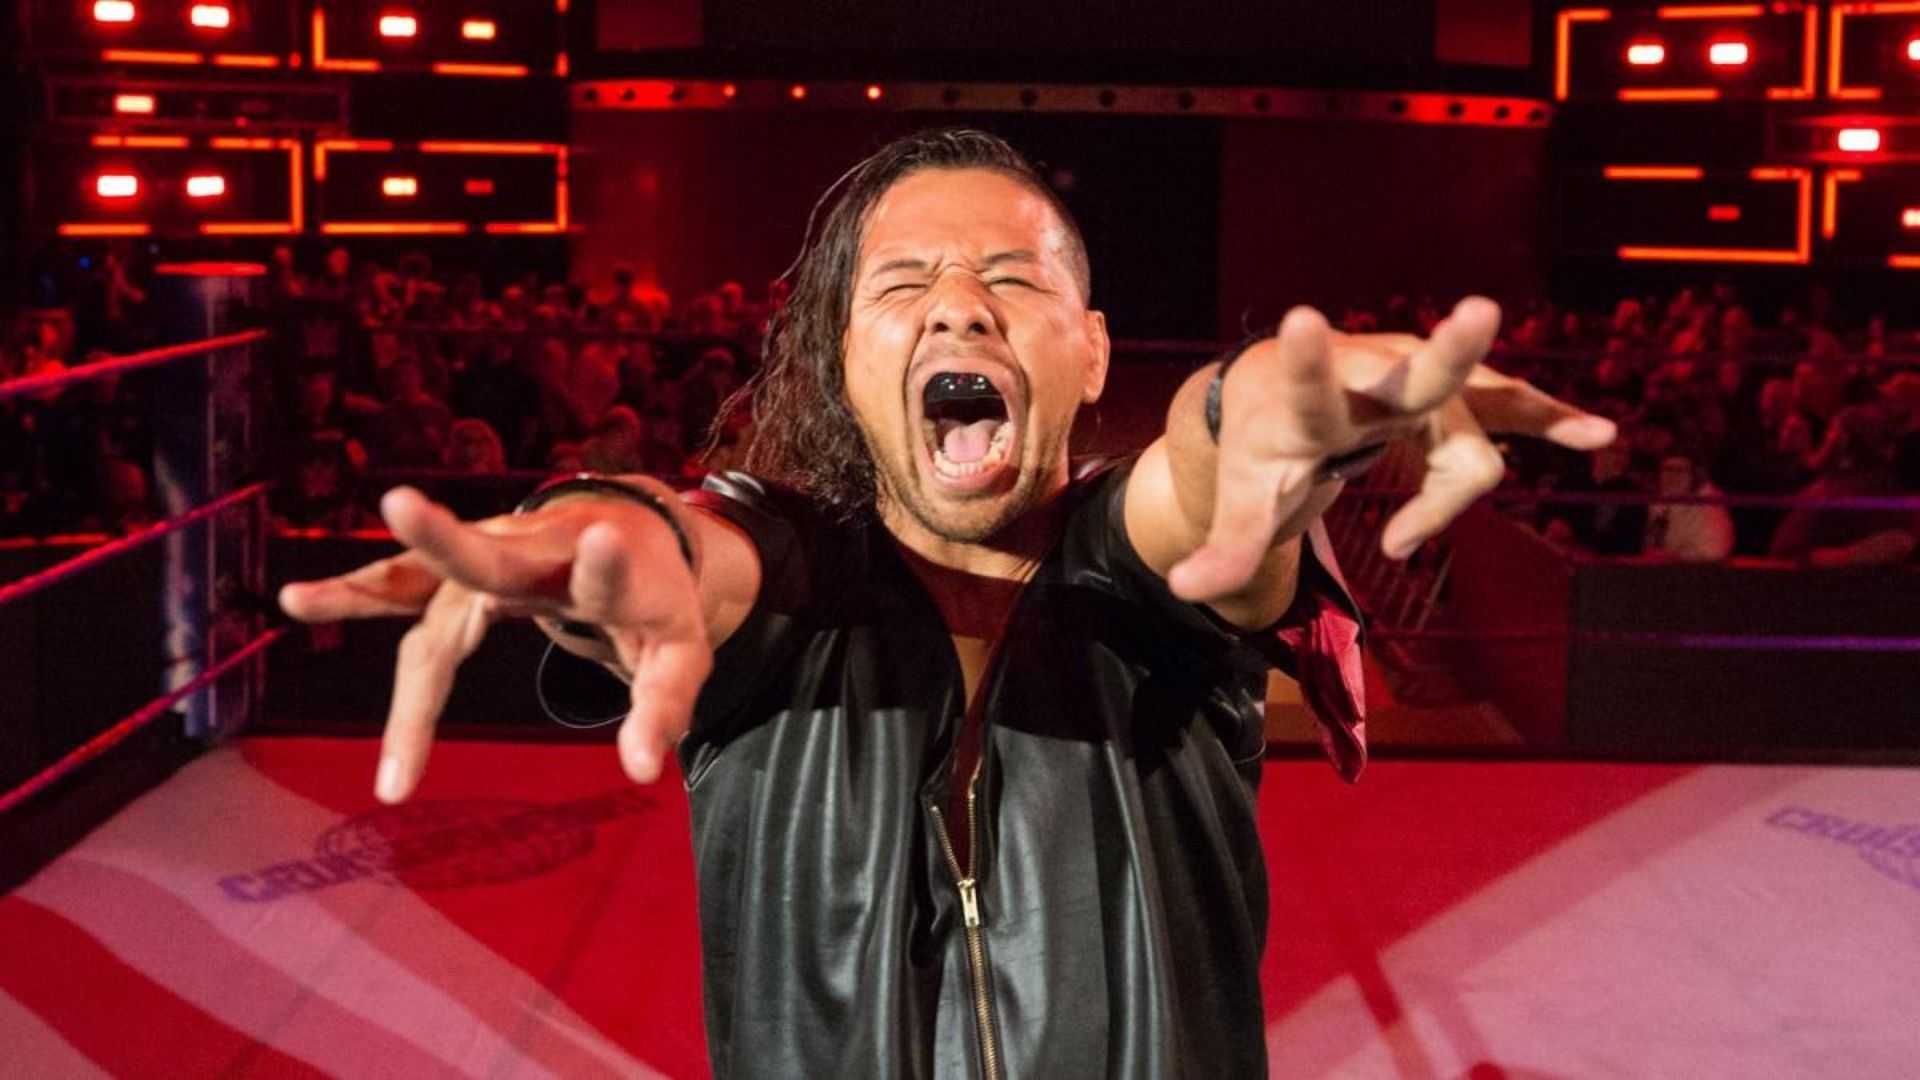 Shinsuke Nakamura is one of WWE